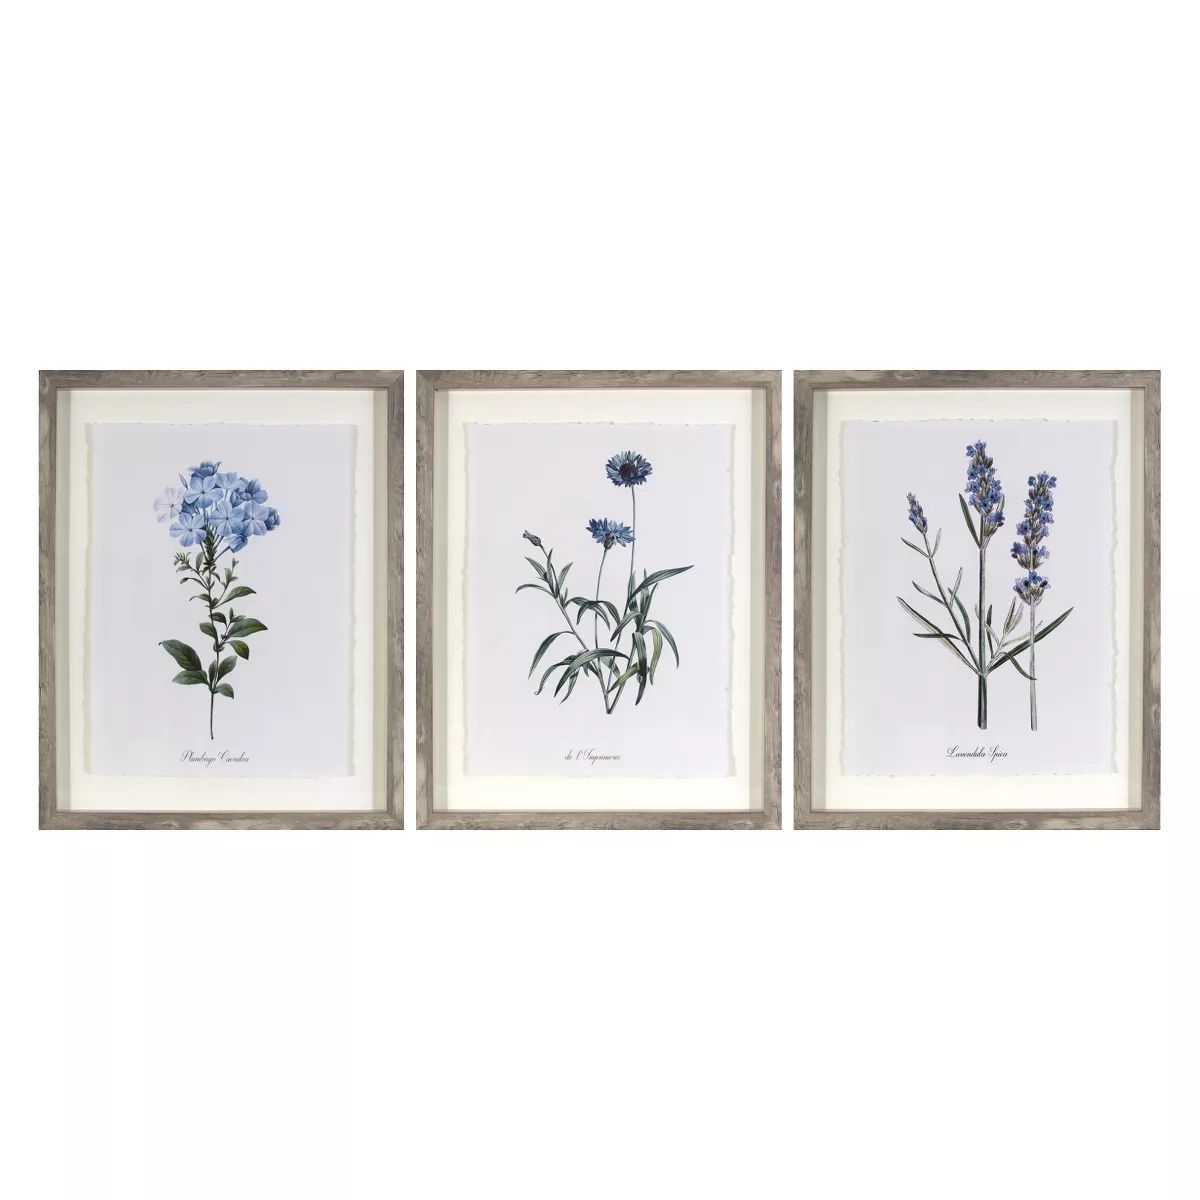 (Set of 3) 16"x20" Framed Vintage Botanicals Decorative Wall Art Natural/Blue - Threshold™ | Target